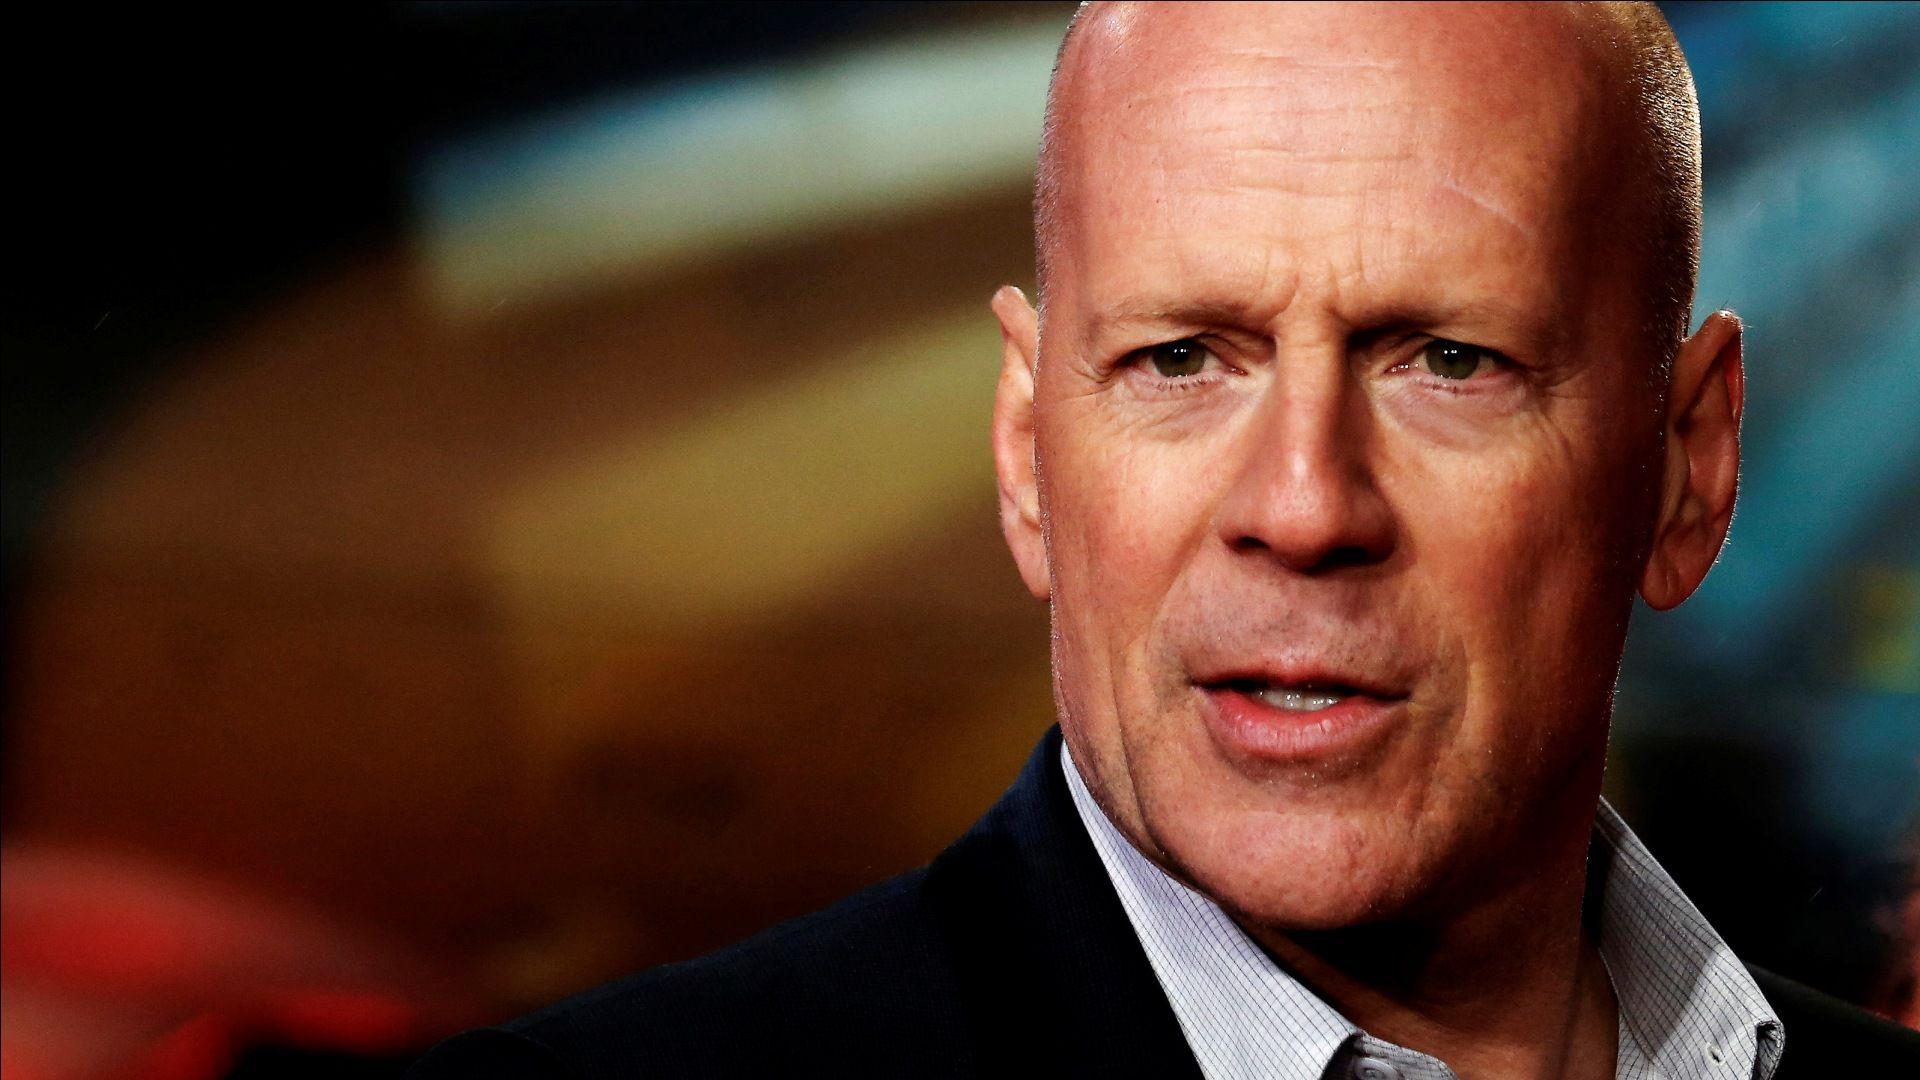 Bruce Willis to Star in Death Wish Remake. The Nerd Stash